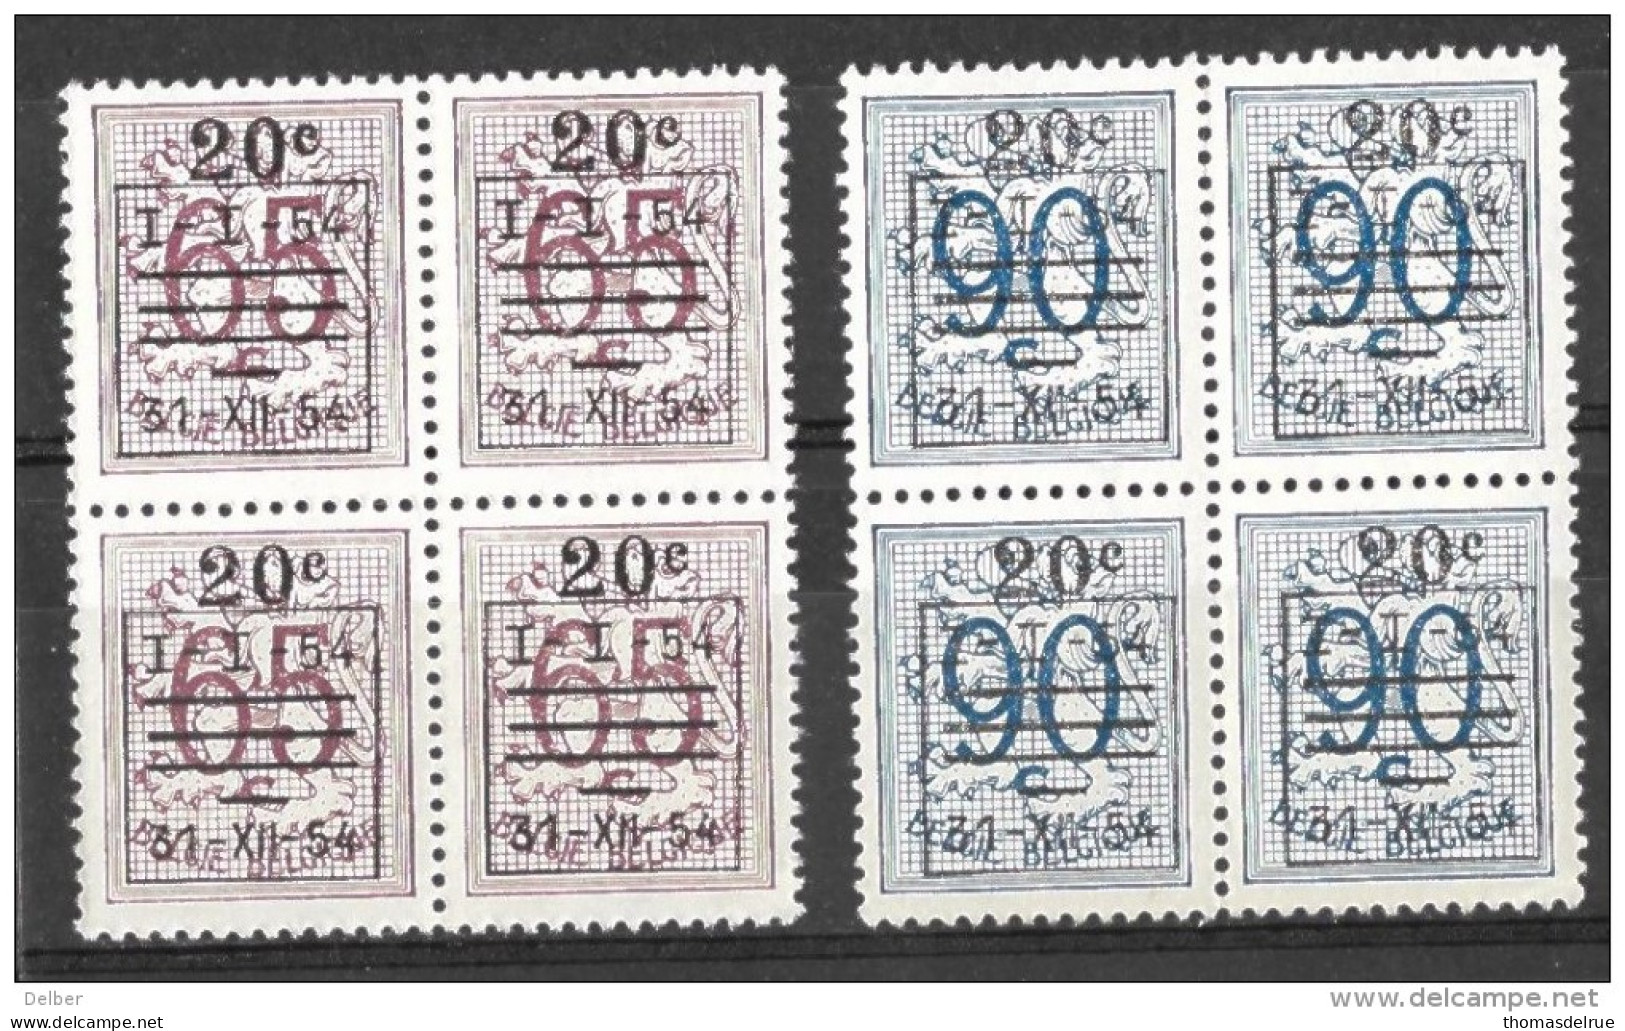 _6R-663: Restje Van 2 Zegels  In Blok V.4.. .. Om Verder Uit Te Zoeken: 941/2: XX : Postfris...: De  Preo's... - 1951-1975 Heraldic Lion